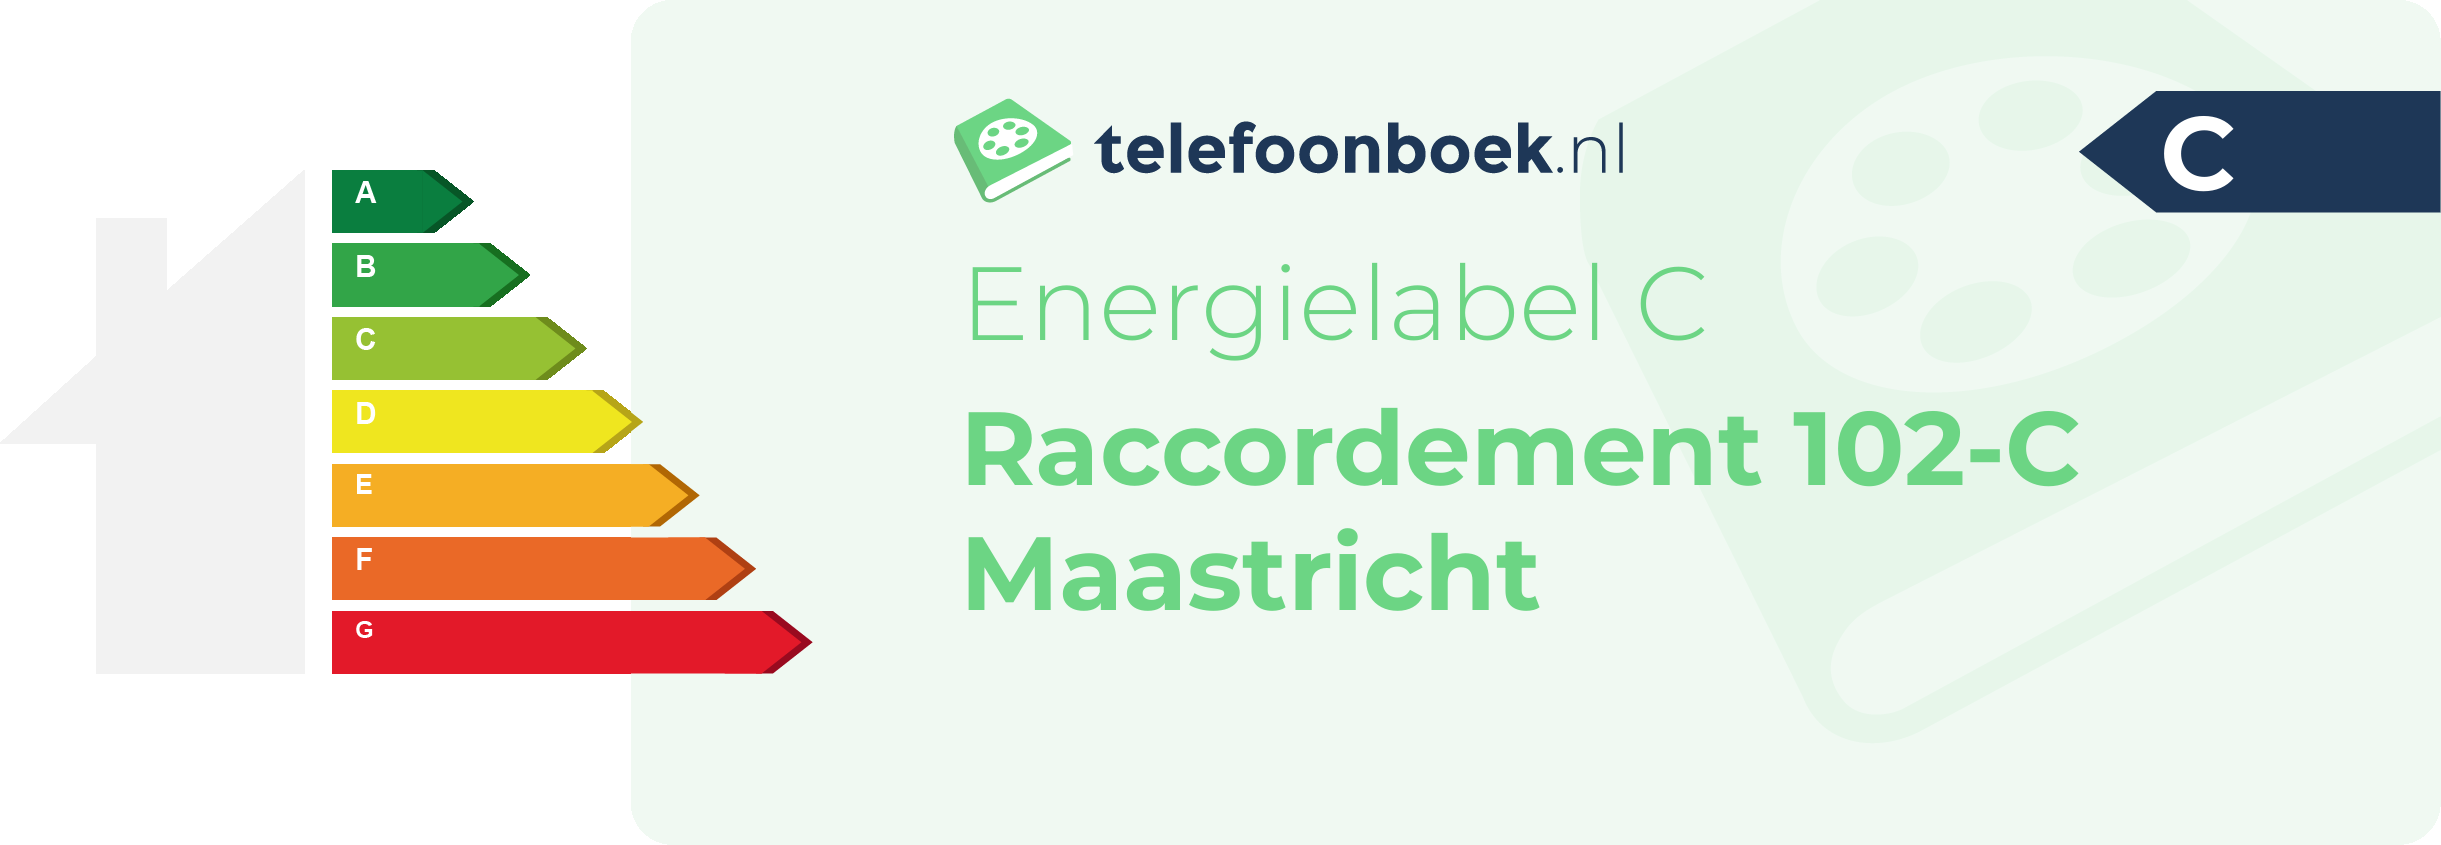 Energielabel Raccordement 102-C Maastricht